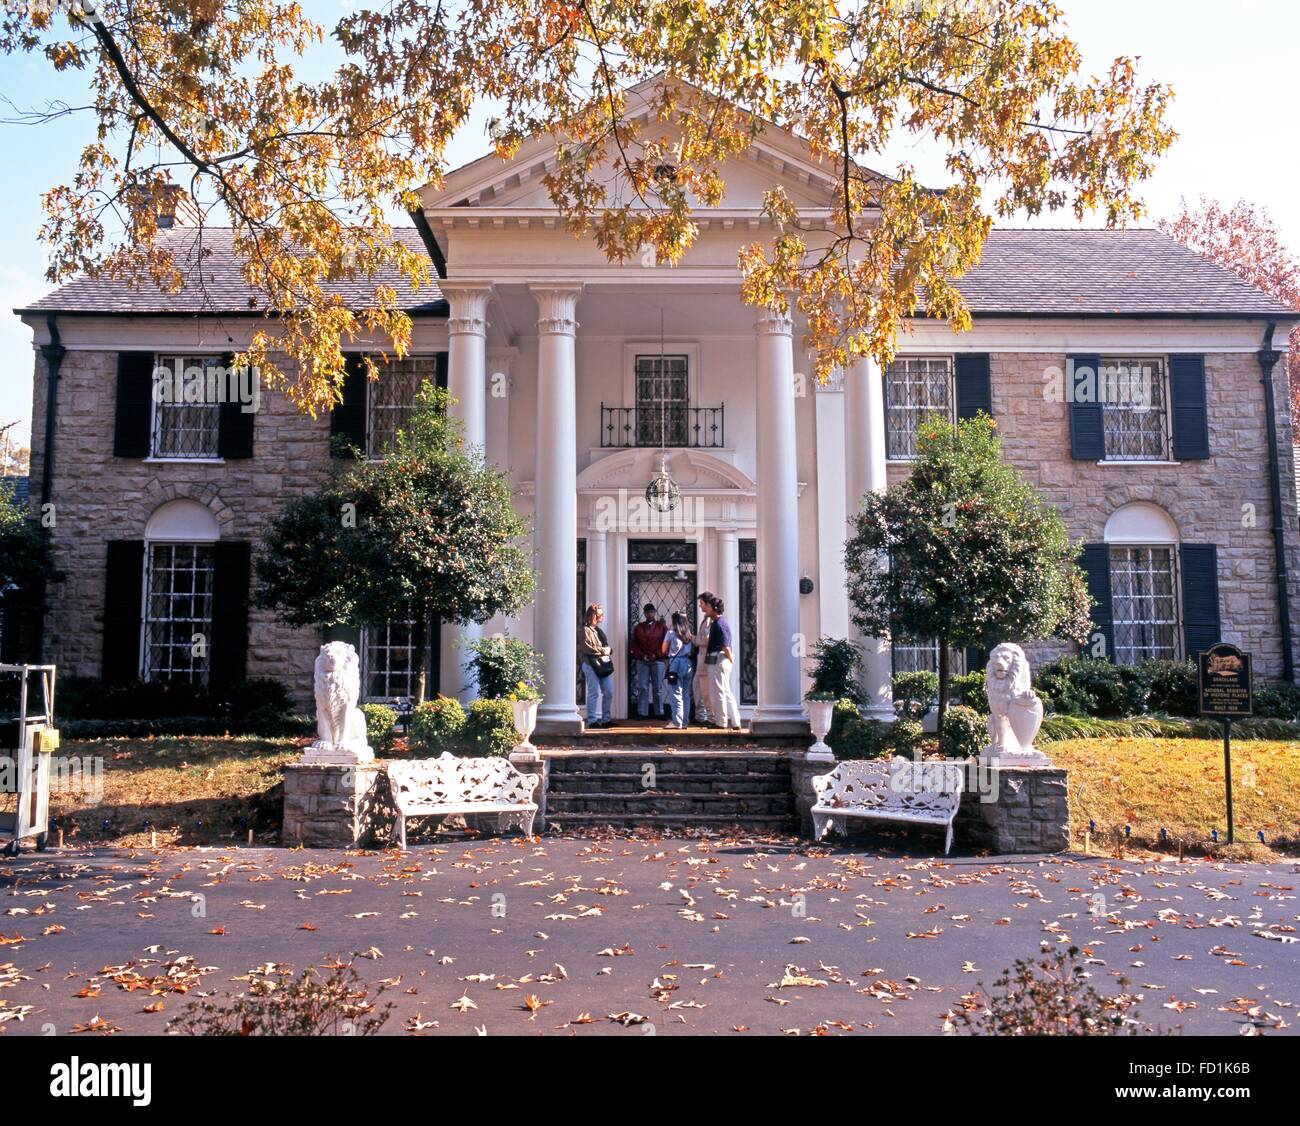 Vue avant de Graceland, la maison d'Elvis Presley, au cours de l'automne, Memphis, Tennessee, États-Unis d'Amérique. Banque D'Images